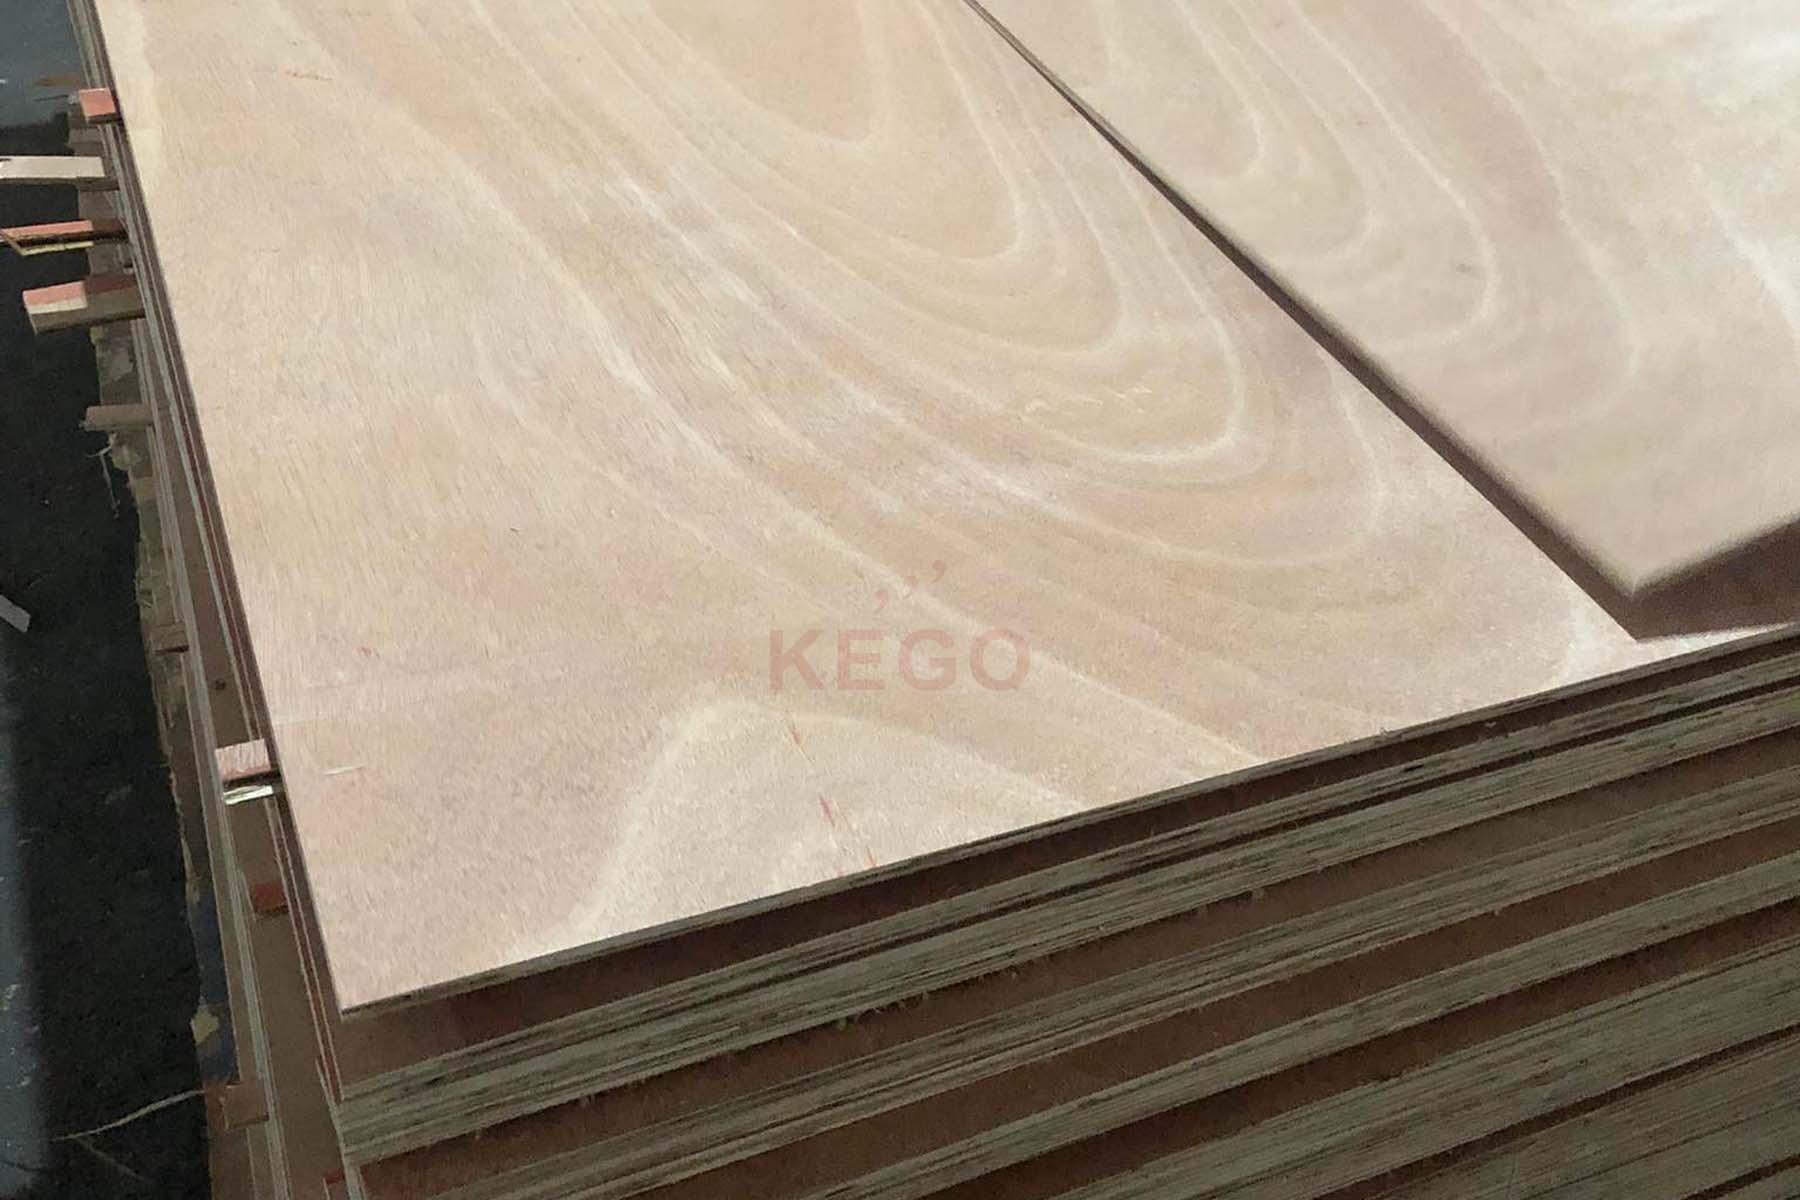 https://kego.com.vn/wp-content/uploads/2015/09/commercial-plywood-kego-6.jpg